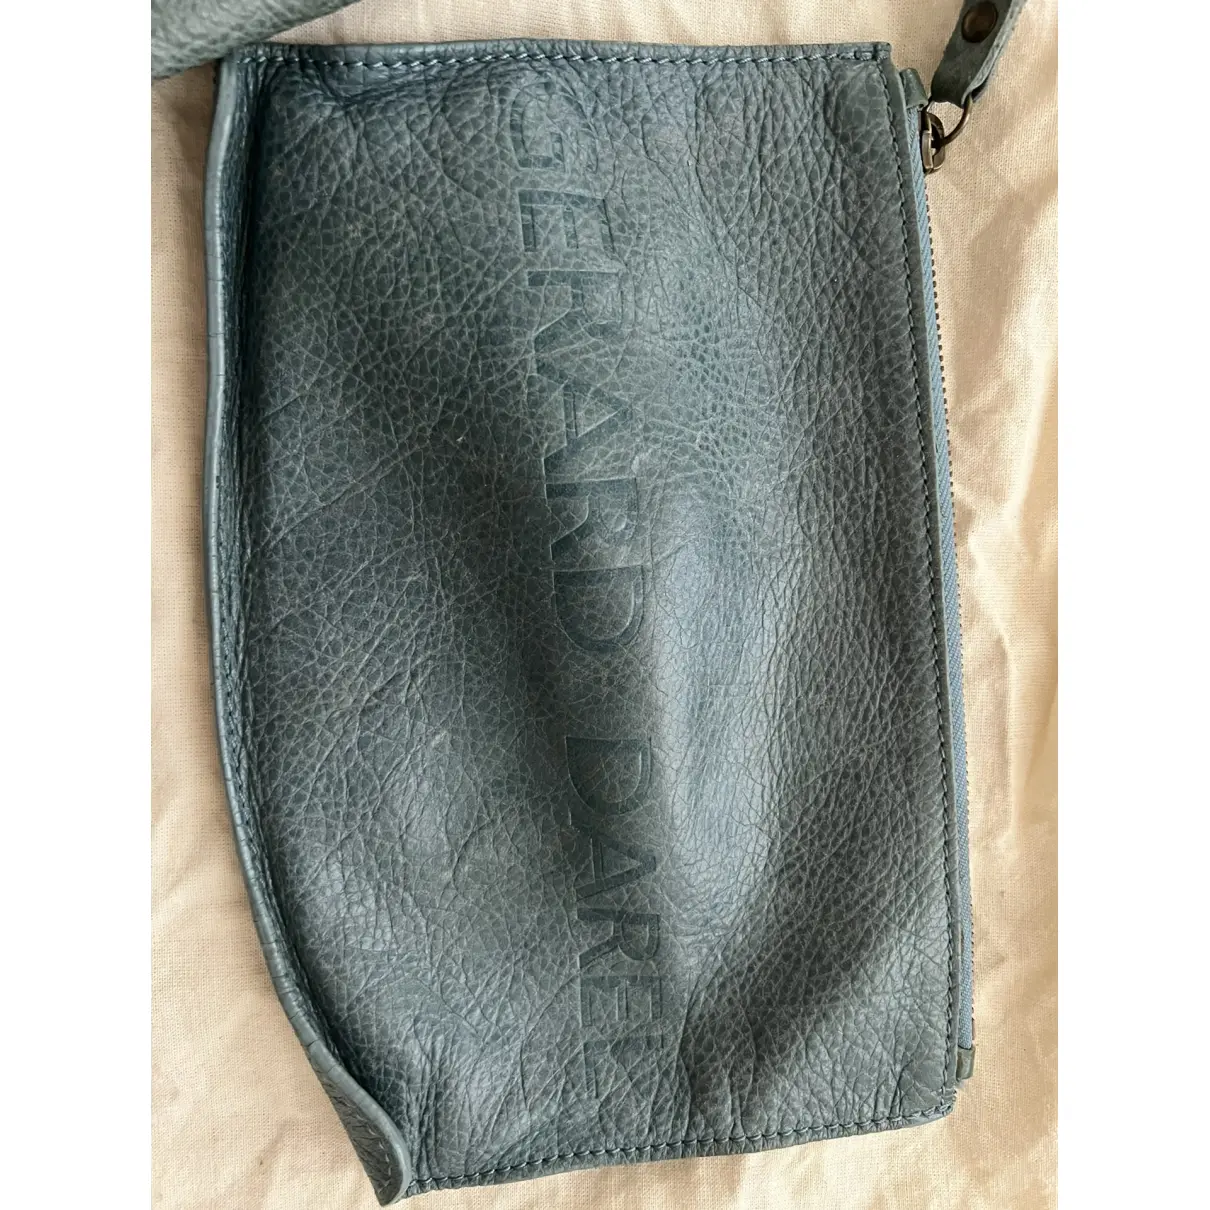 Simple Bag leather tote Gerard Darel